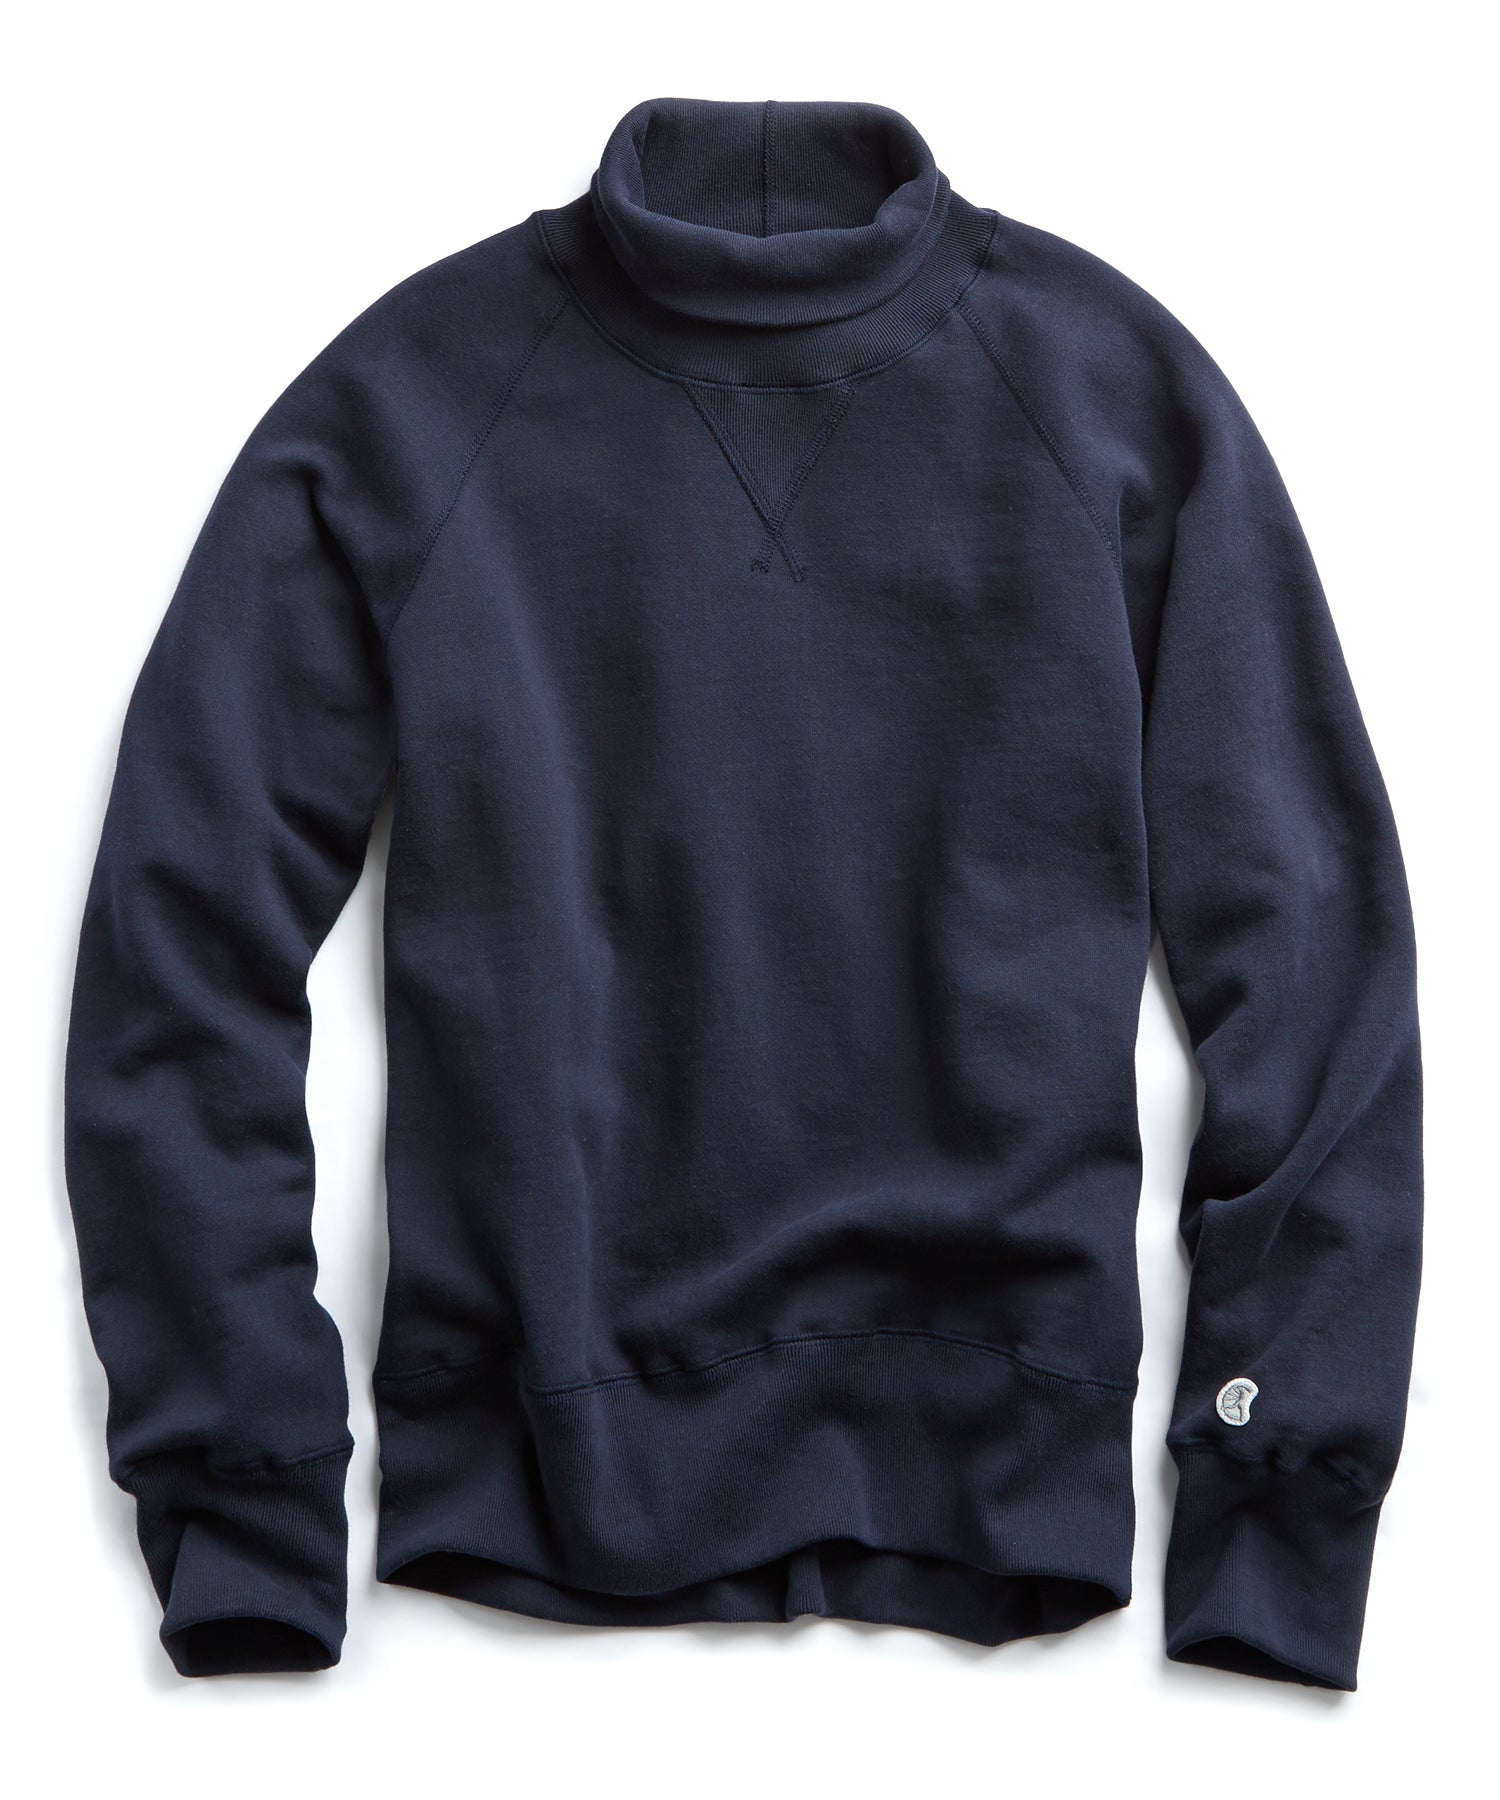 Midweight Turtleneck Sweatshirt in Original Navy